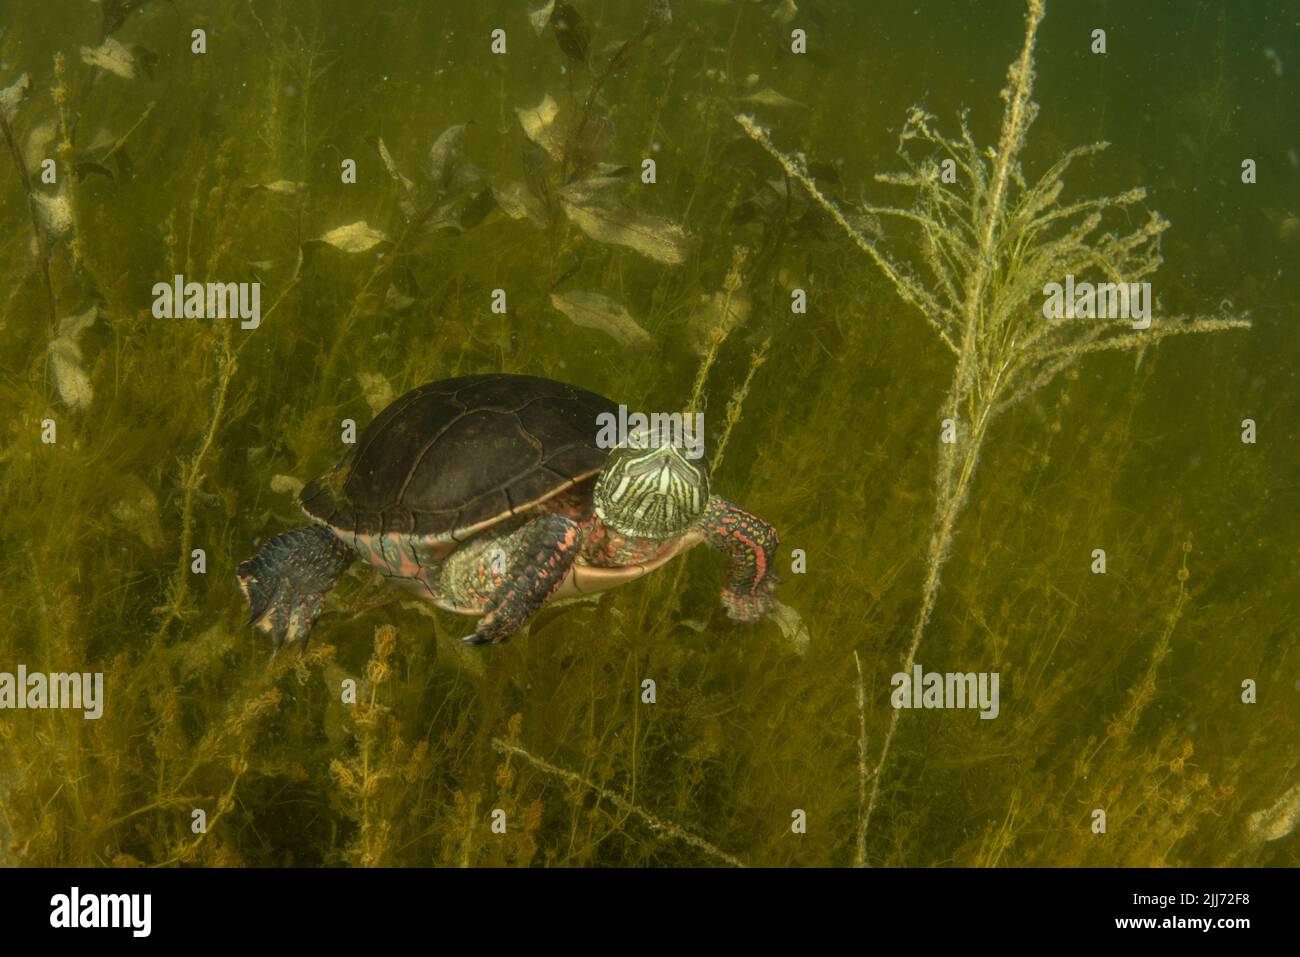 Una tartaruga dipinta (Chrysemys picta) che nuota sott'acqua in un lago d'acqua dolce del Wisconsin. Passa il tempo in vegetazione acquatica al fondo. Foto Stock